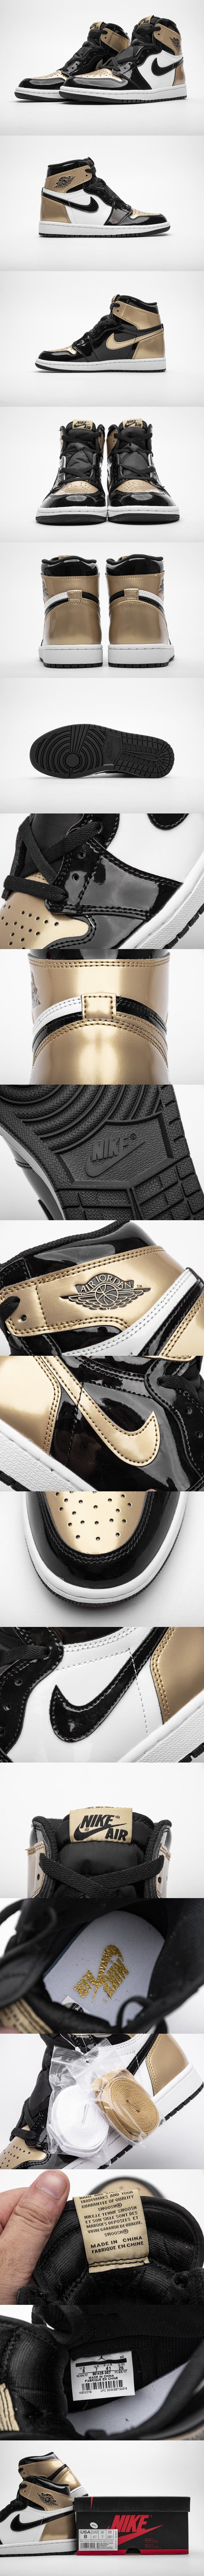 Nike Air Jordan 1 Retro High OG “Gold Toe” 861428-007 ナイキ エアジョーダン１ ゴールドトウ